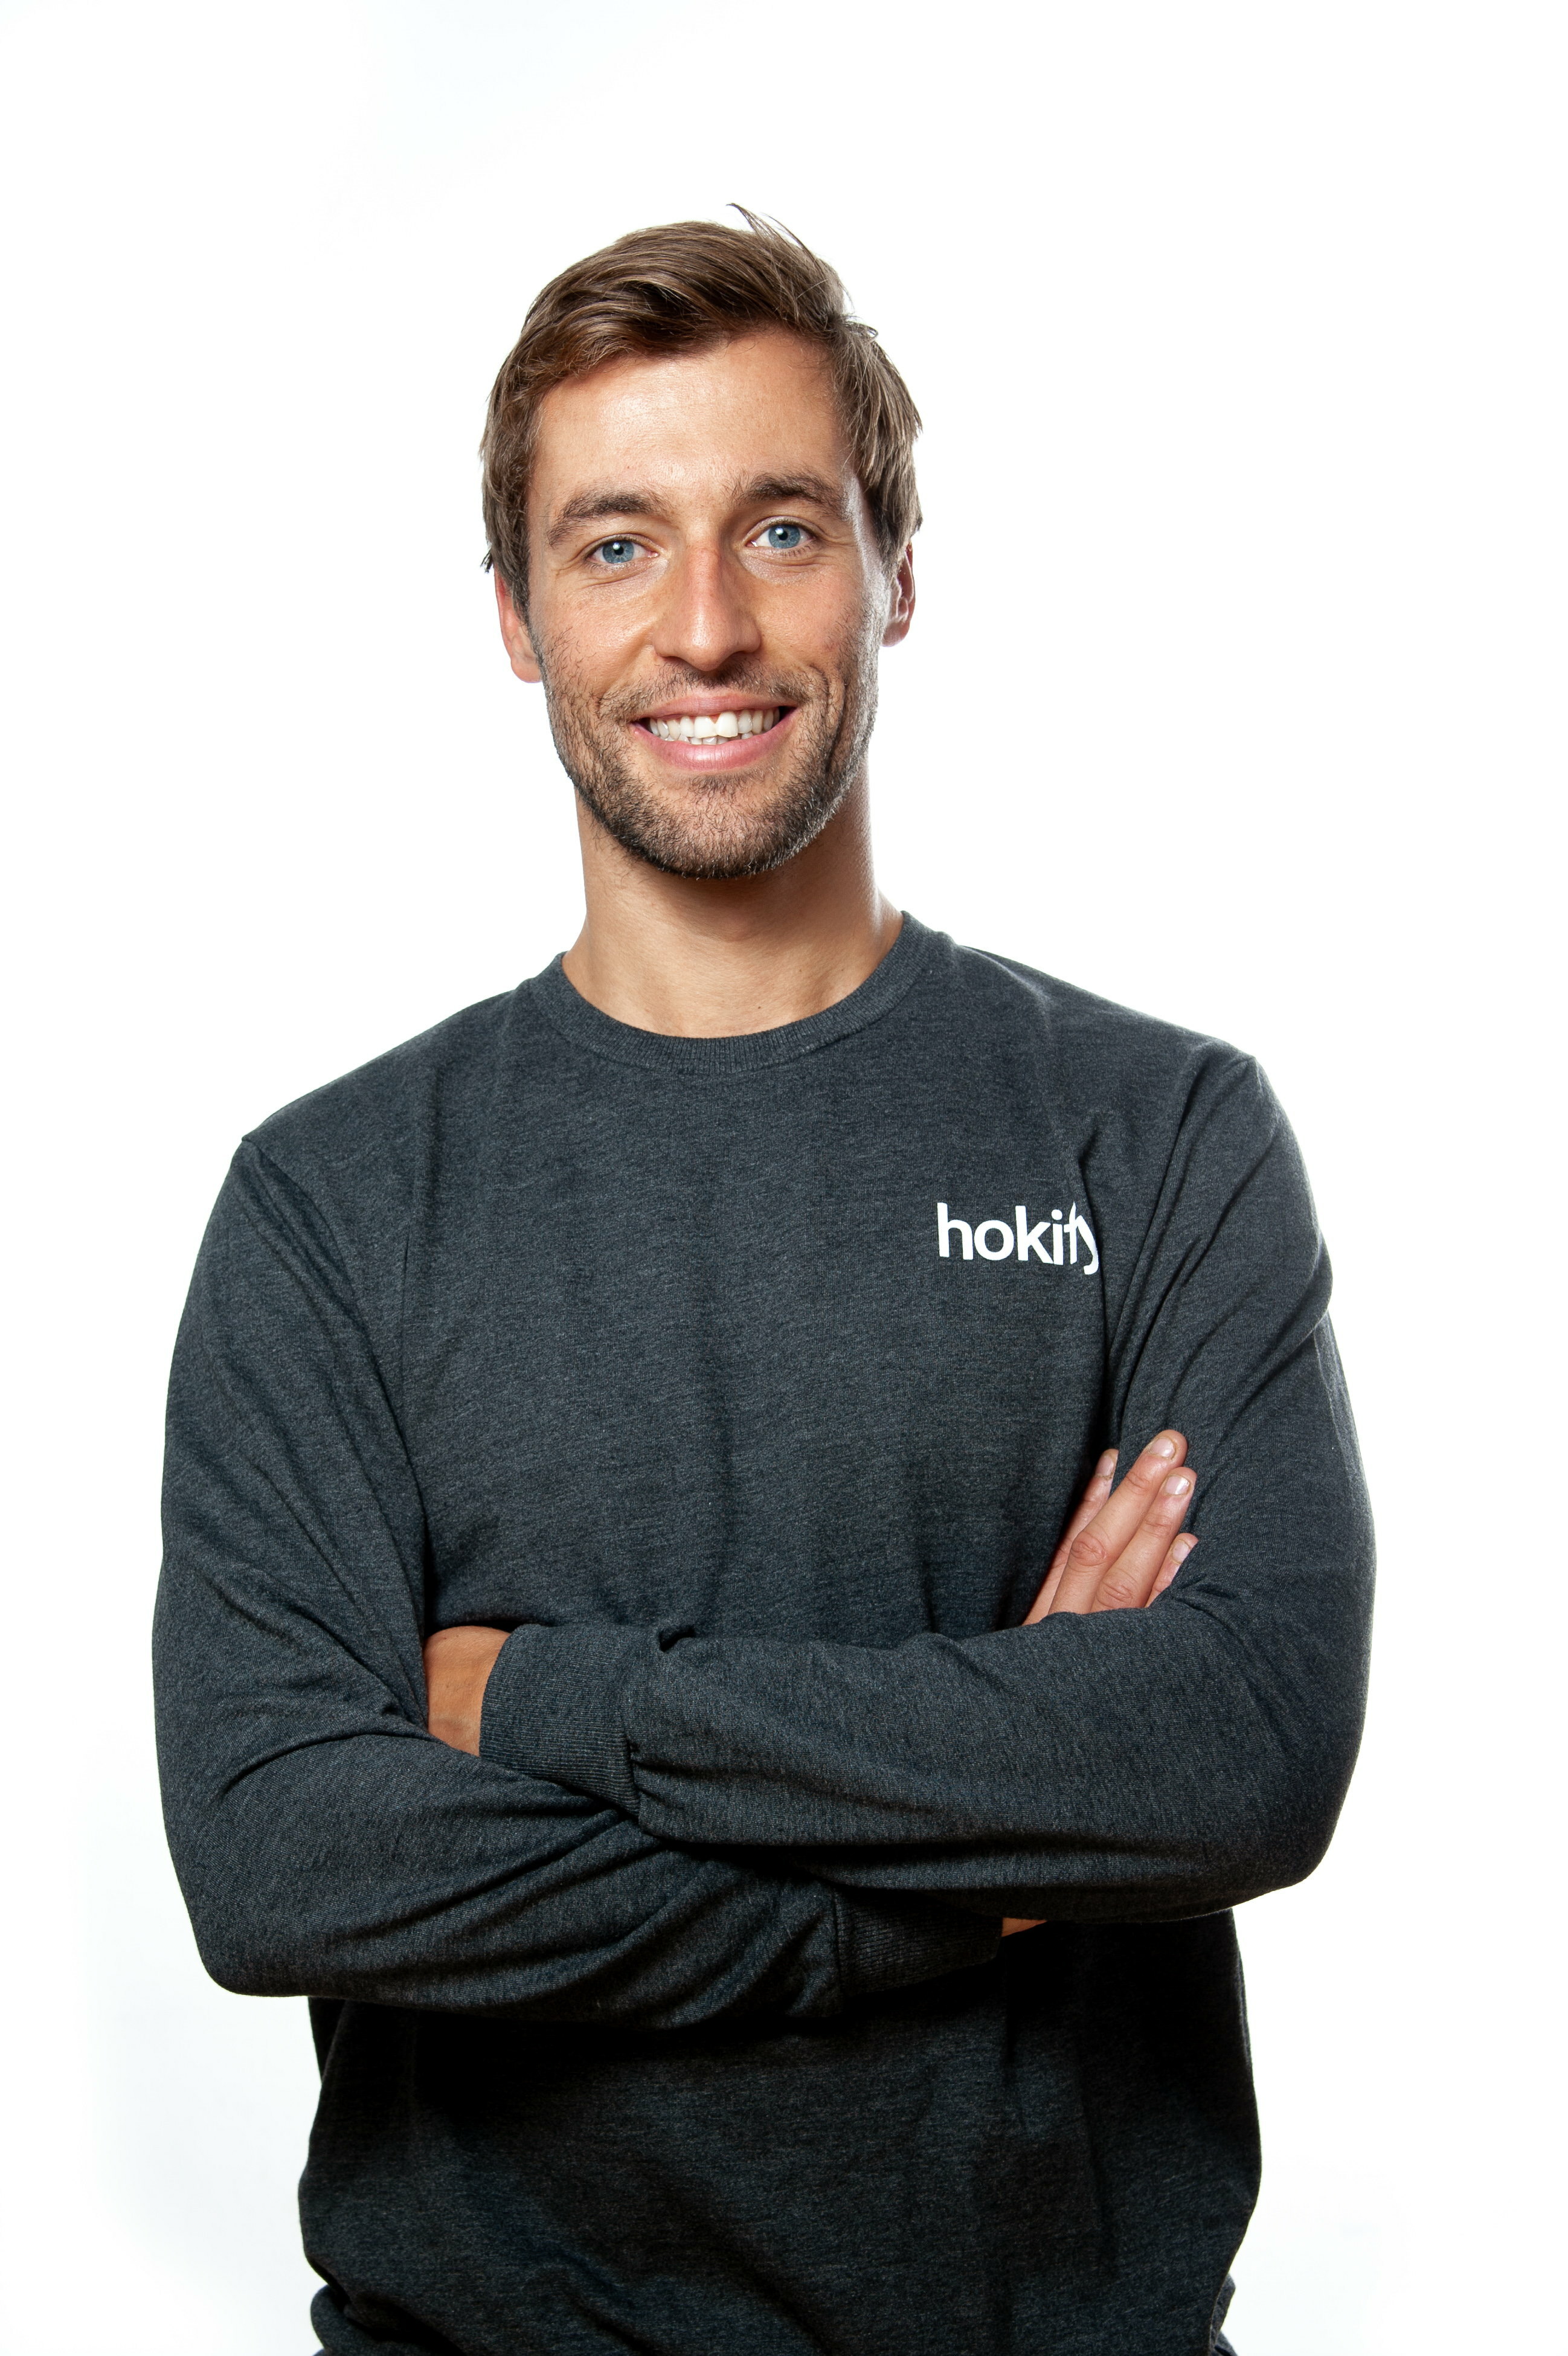 Karl Edlbauer, CMO und Co-Founder von hokify